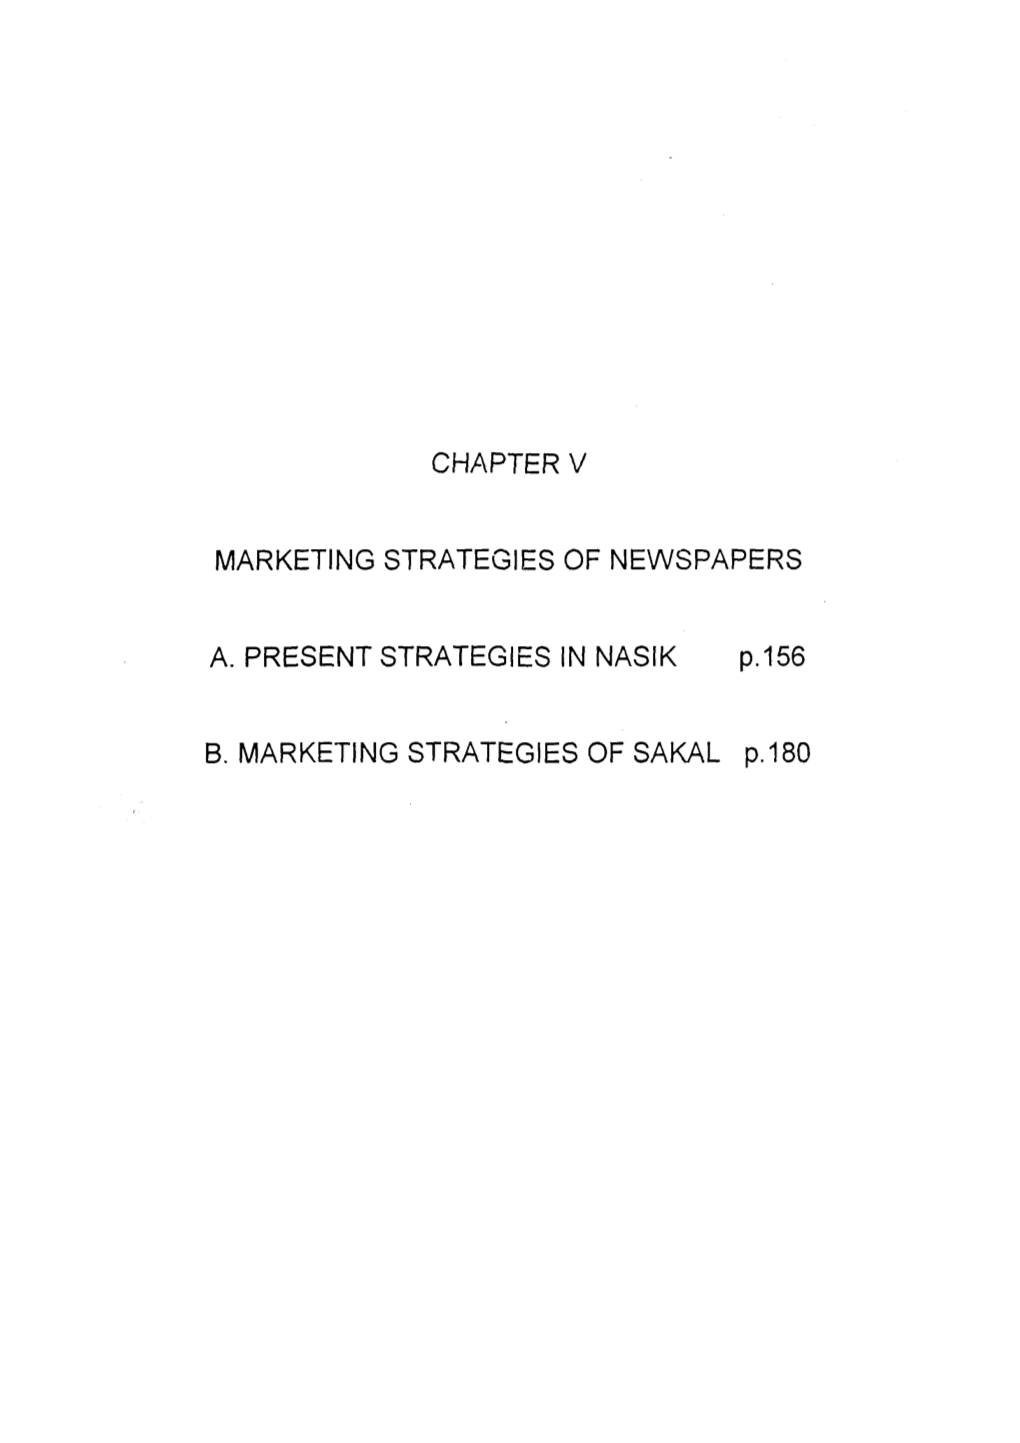 Marketing Strategies of the Newspapers in Nasik